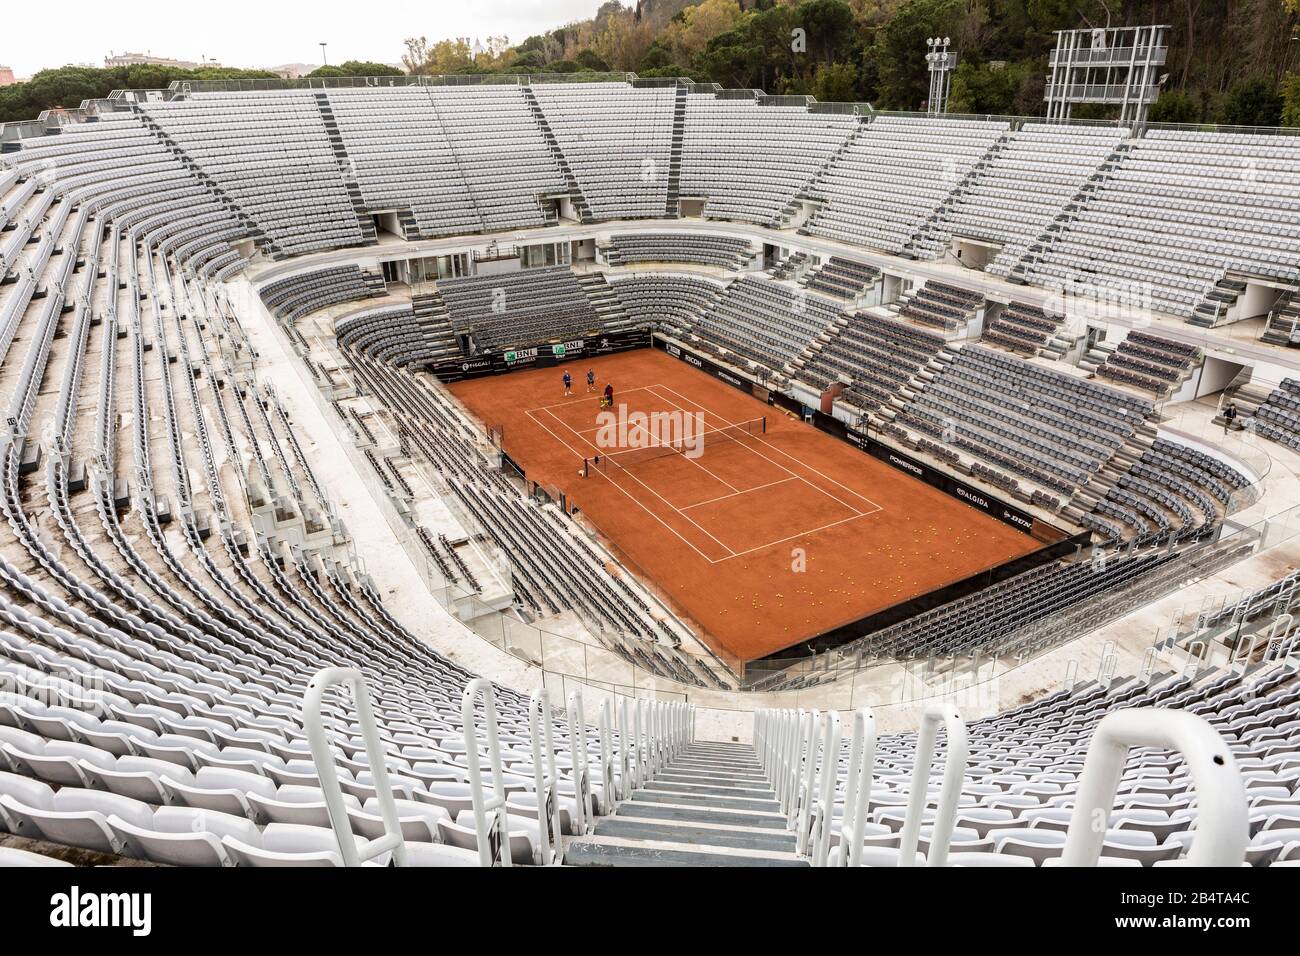 Stade De Tennis De Rome. Deux joueurs de tennis s'entraîner avec leur  entraîneur dans un stade de tennis vide de Rome (Stadio del tennis di Roma  Photo Stock - Alamy